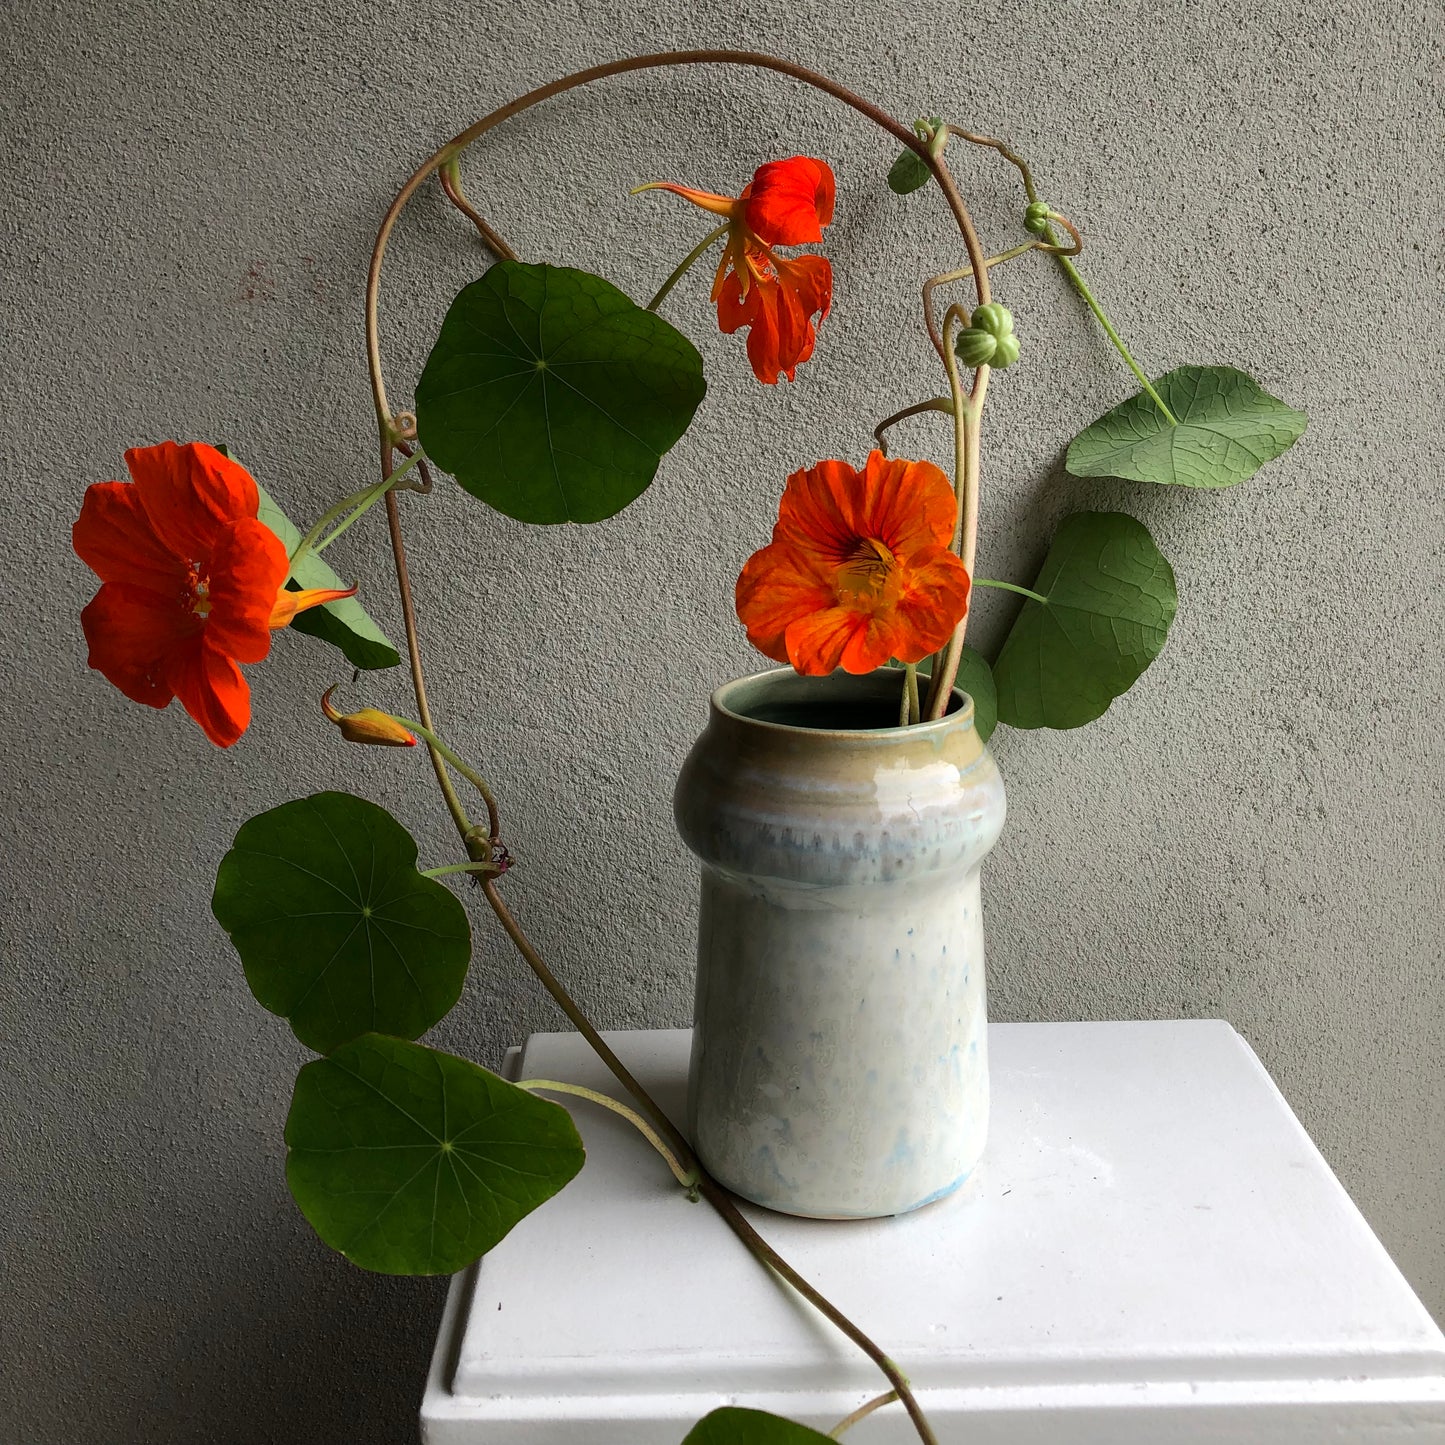 Cute vase